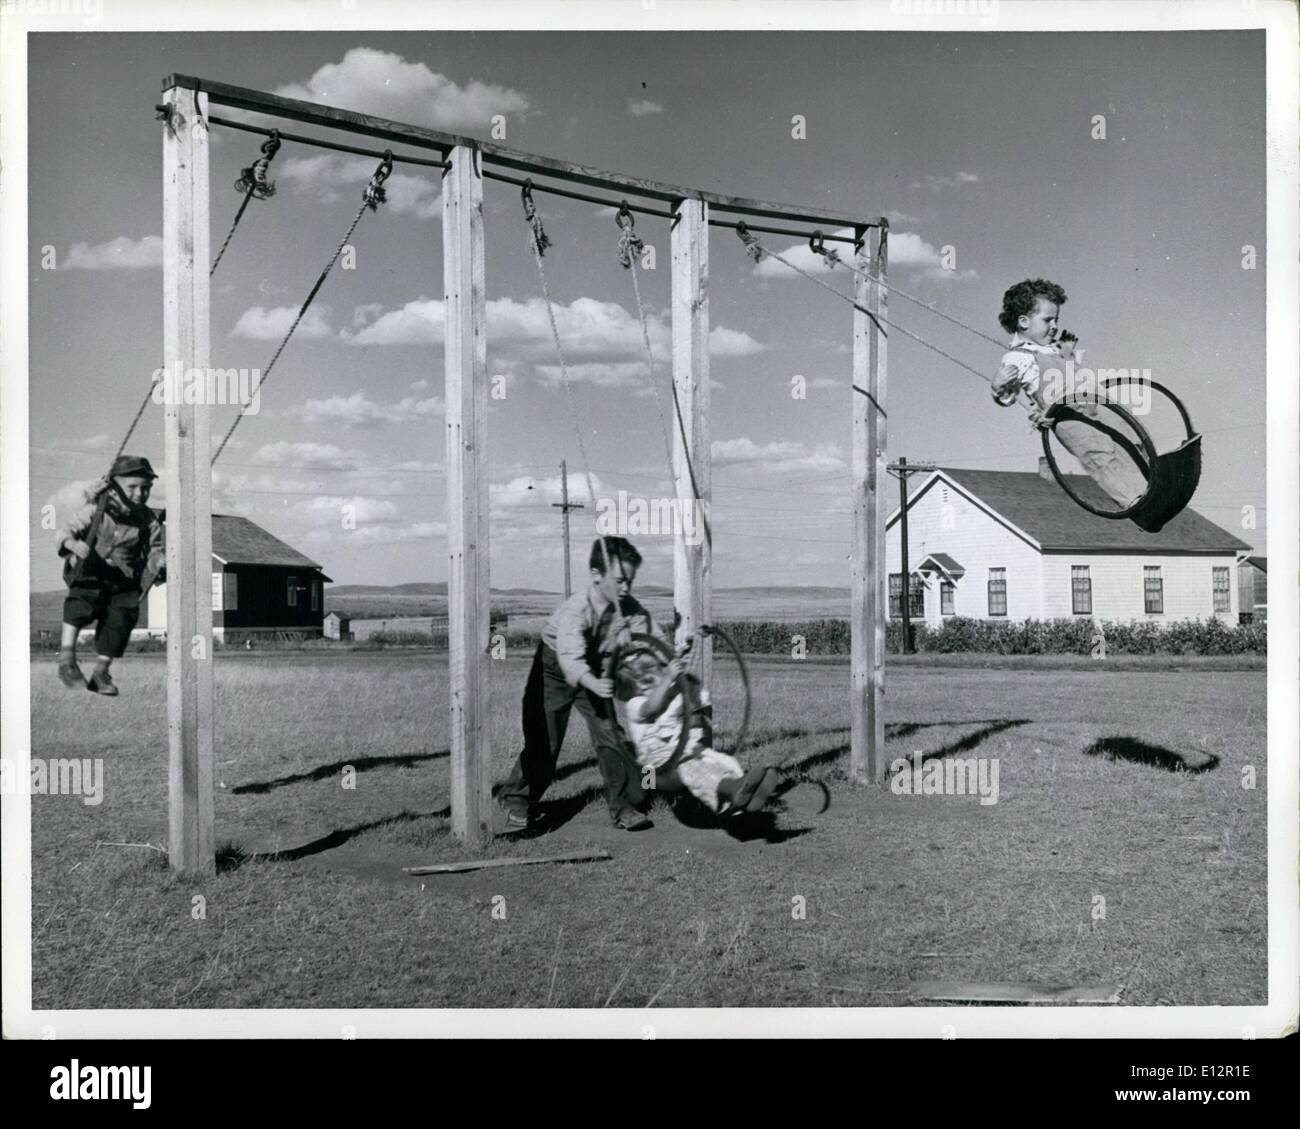 24. Februar 2012 - Koop-Farm In Kanada die Kinder haben auf dem Matador Bauernhof viele Spielkameraden und einen Platz zum spielen gemeinsam von den Häusern eingeschlossen. Die Schaukeln sind aus alten LKW-Reifen gefertigt. Stockfoto